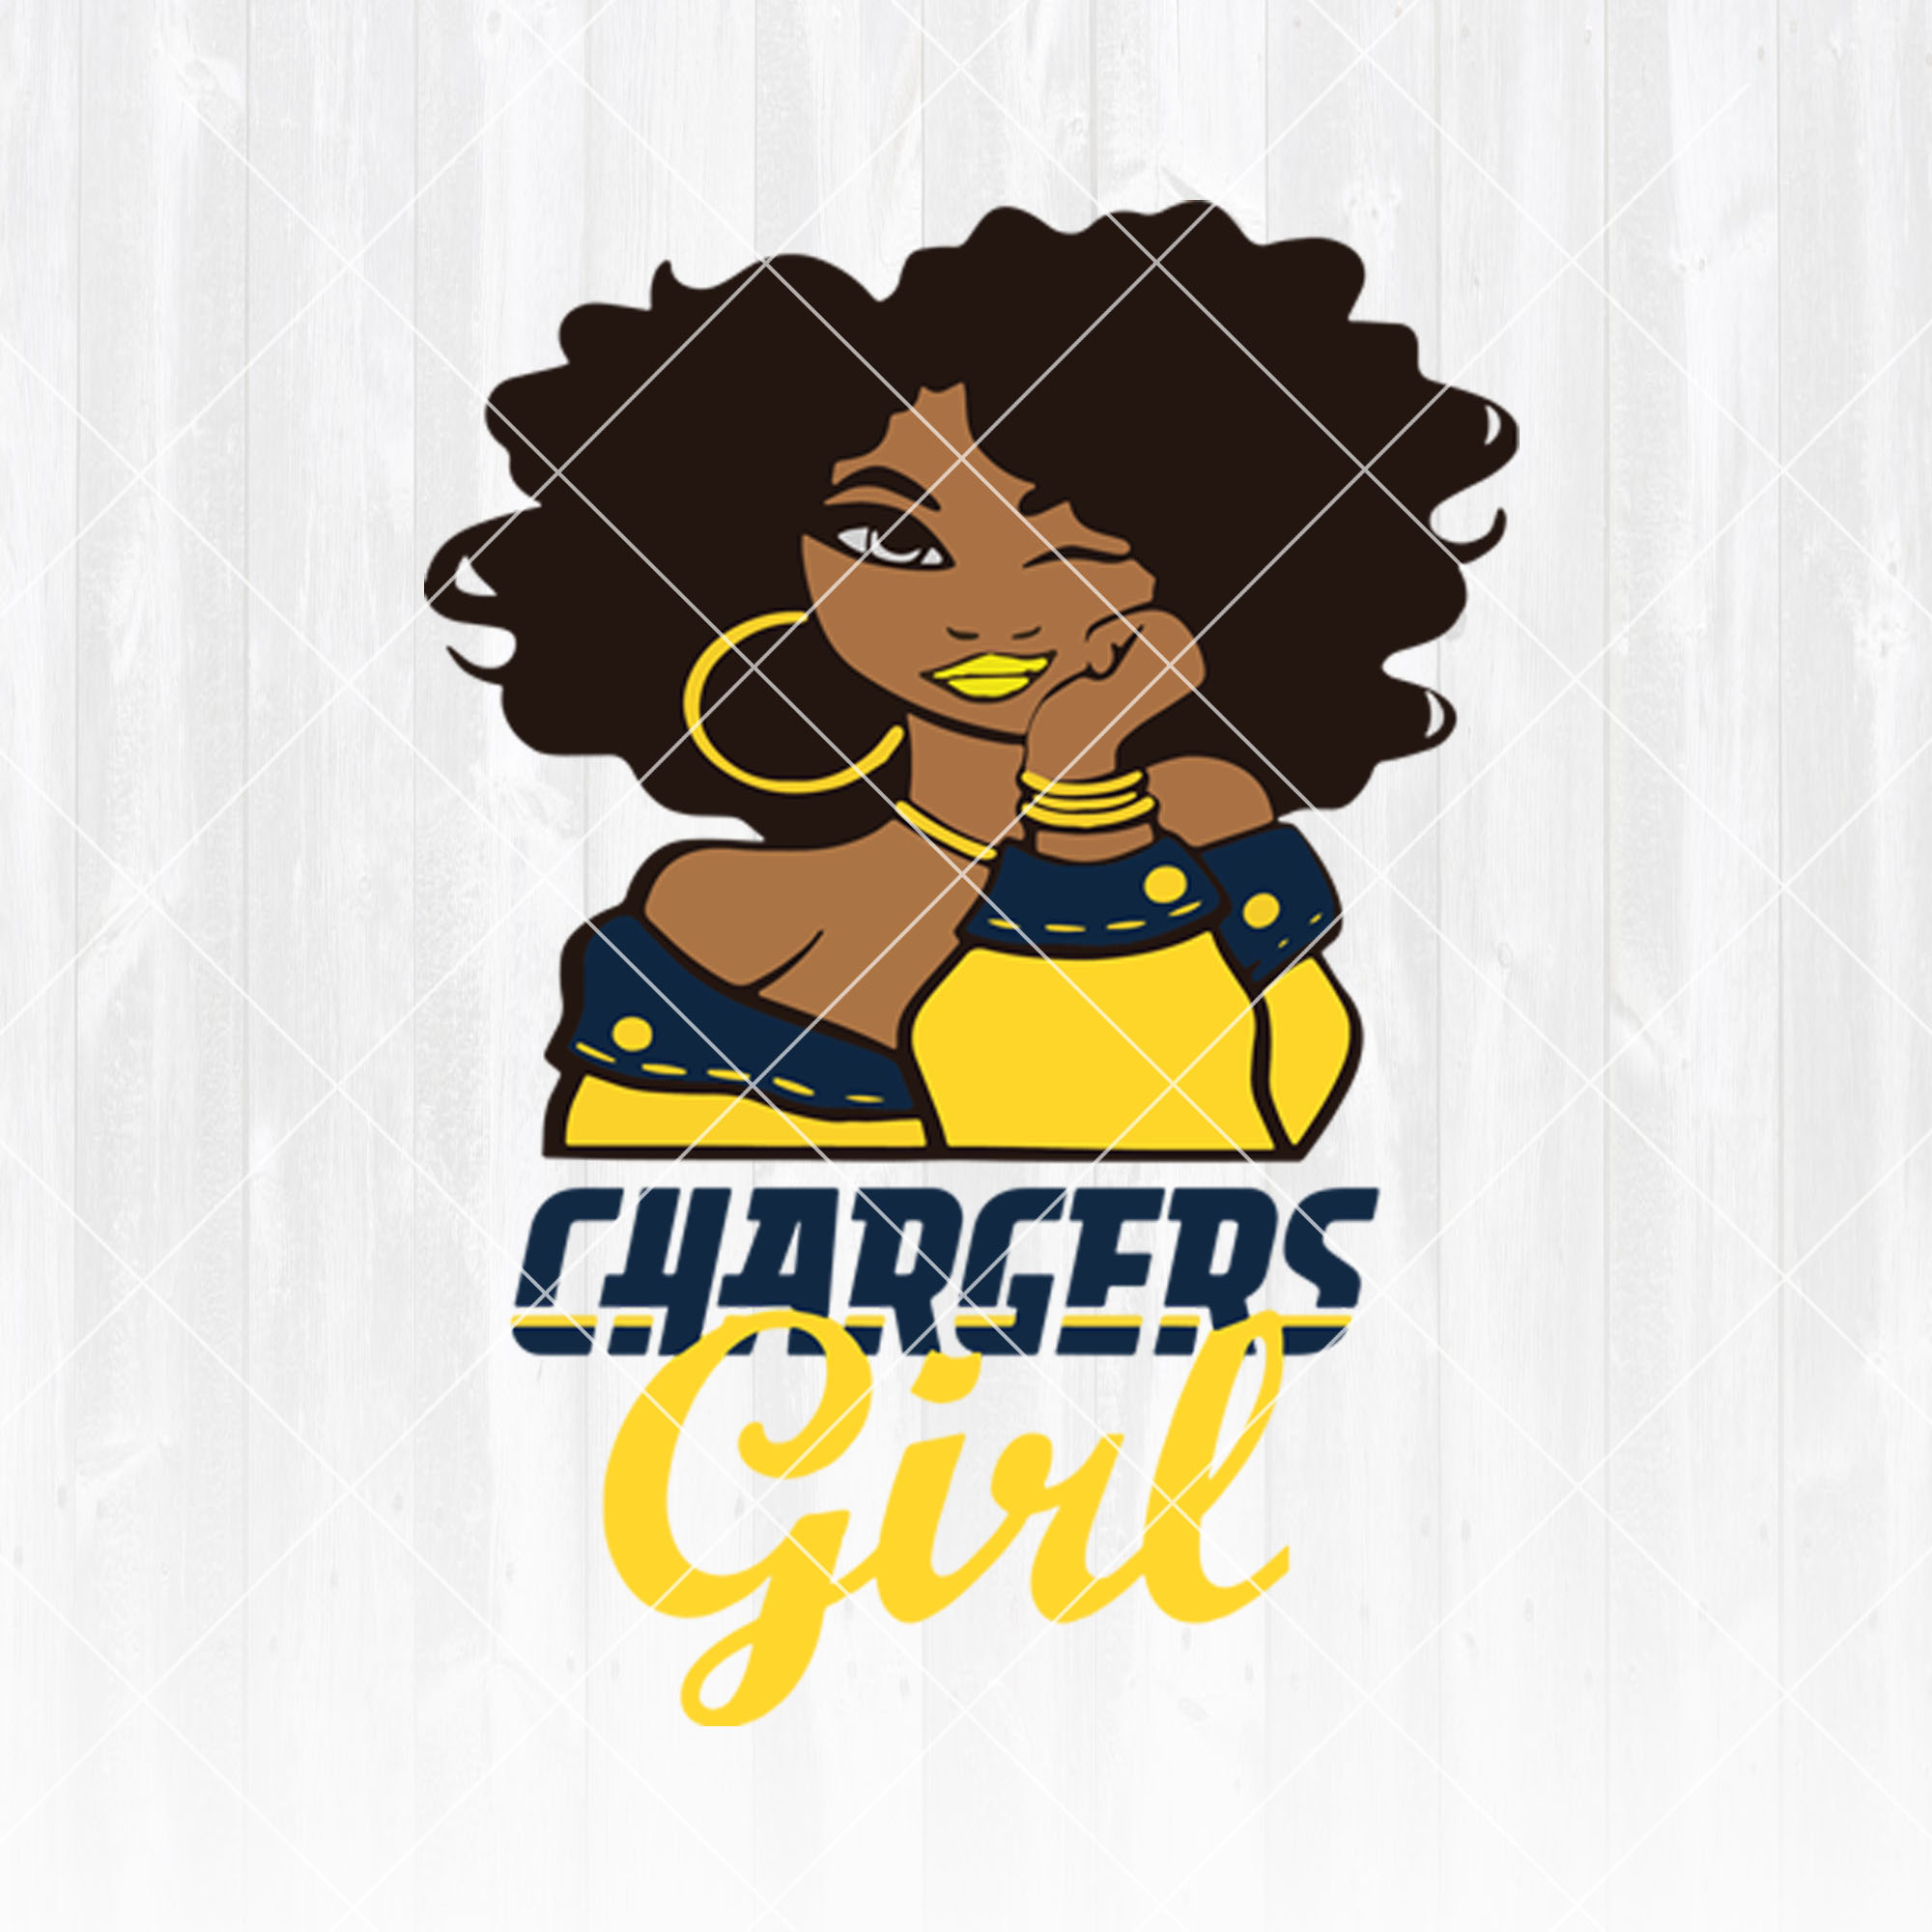 Los Angeles Chargers Girl svg  - Los Angeles Chargers Girl - NFL Team Girl Svg -Football Team Svg - Football Svg NFL Svg - Digital Download 